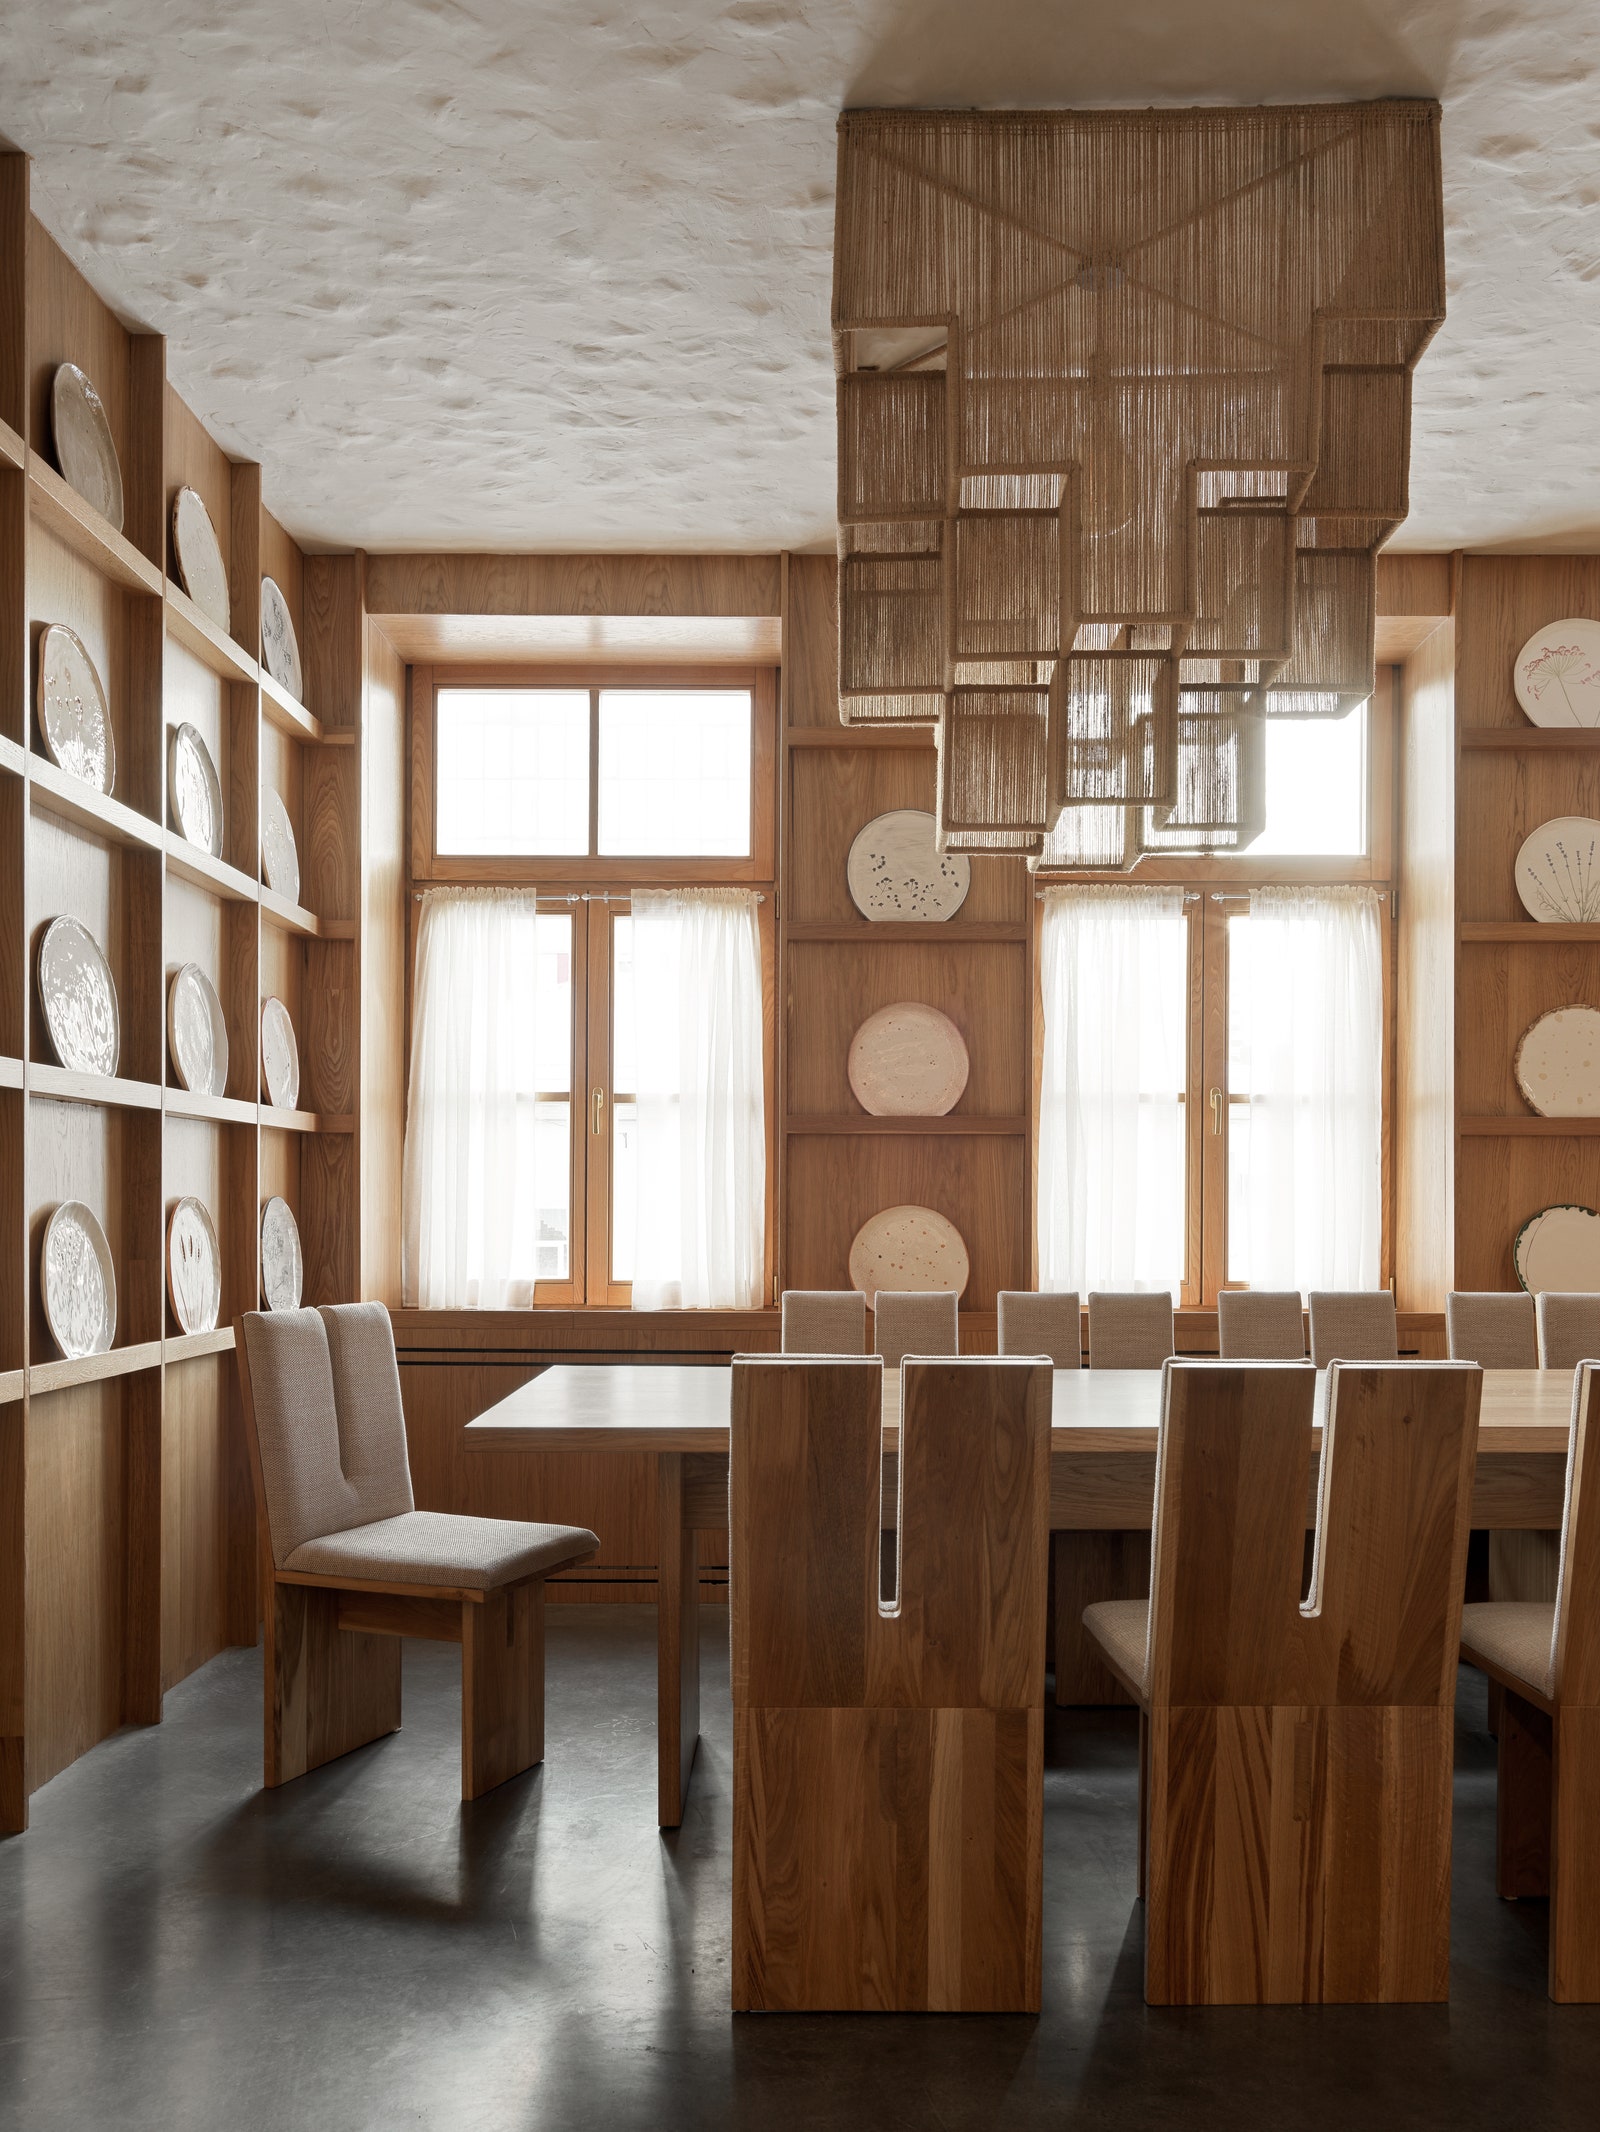 Ресторан “Дом” по проекту Megre Interiors в Хабаровске